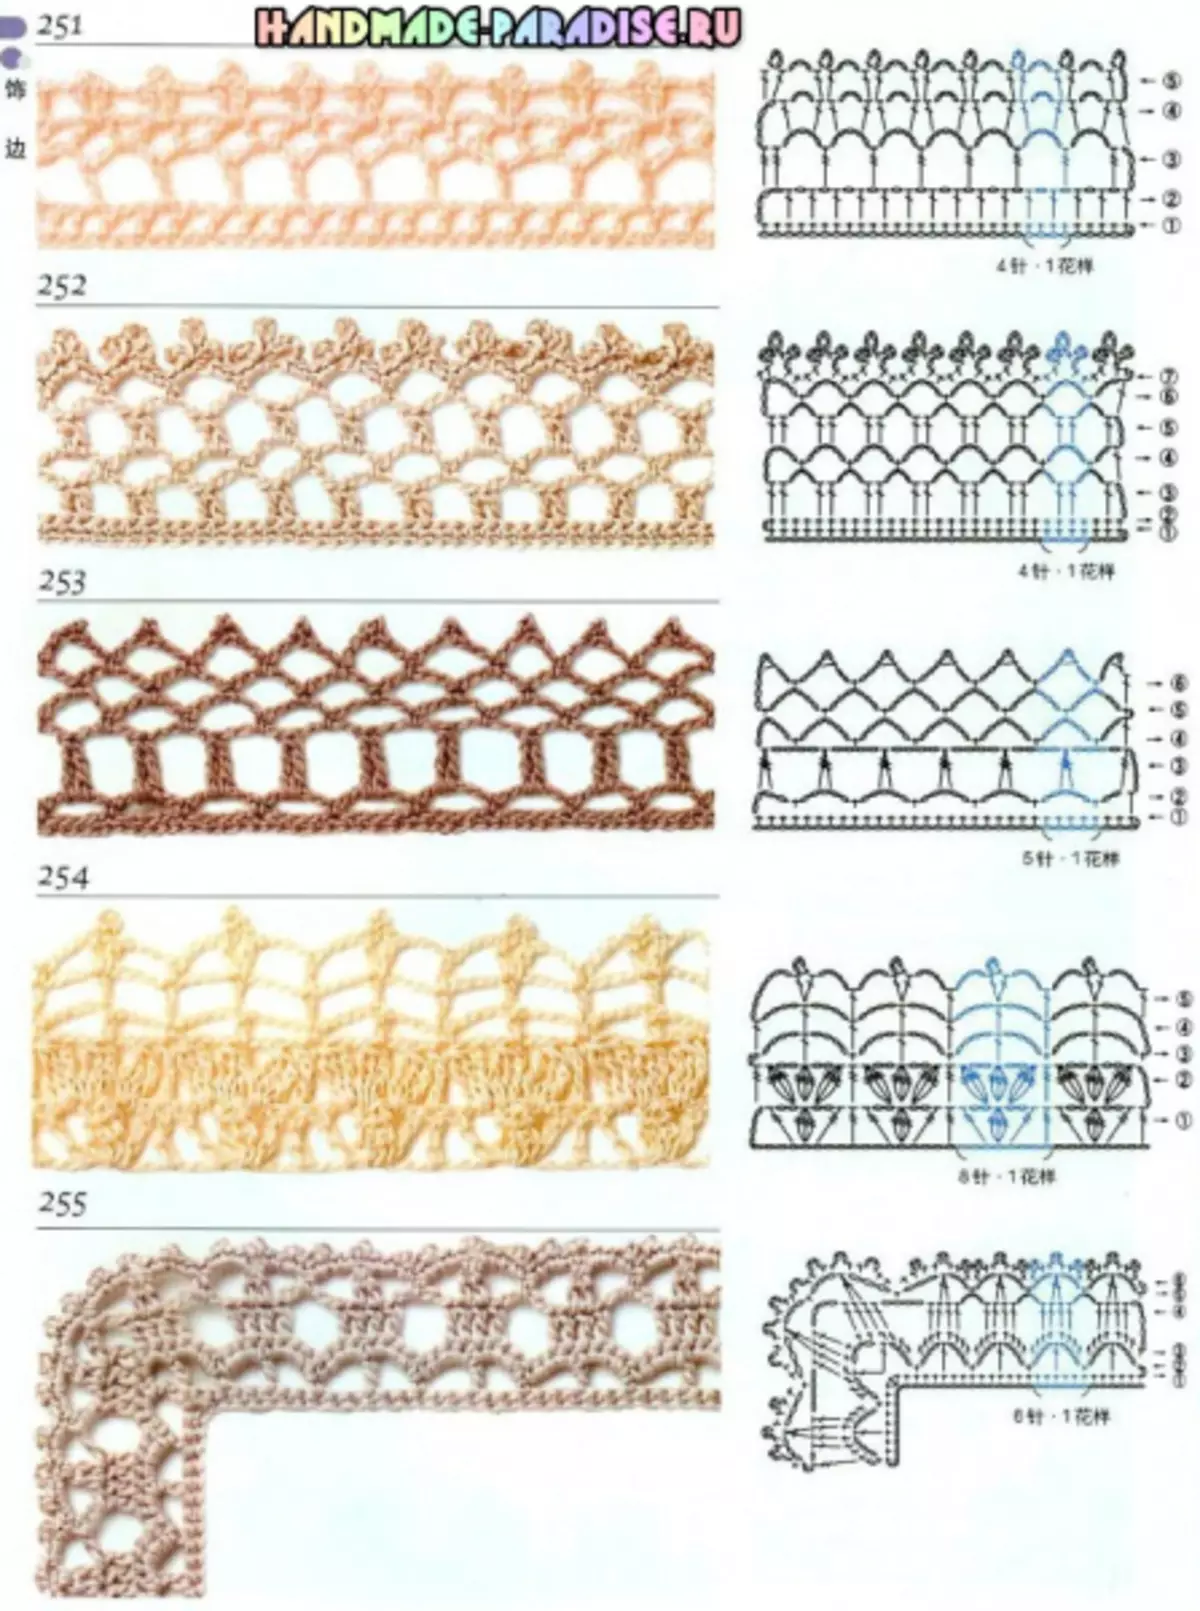 Crochet. Hanyoyi 300 na motifs da alamu